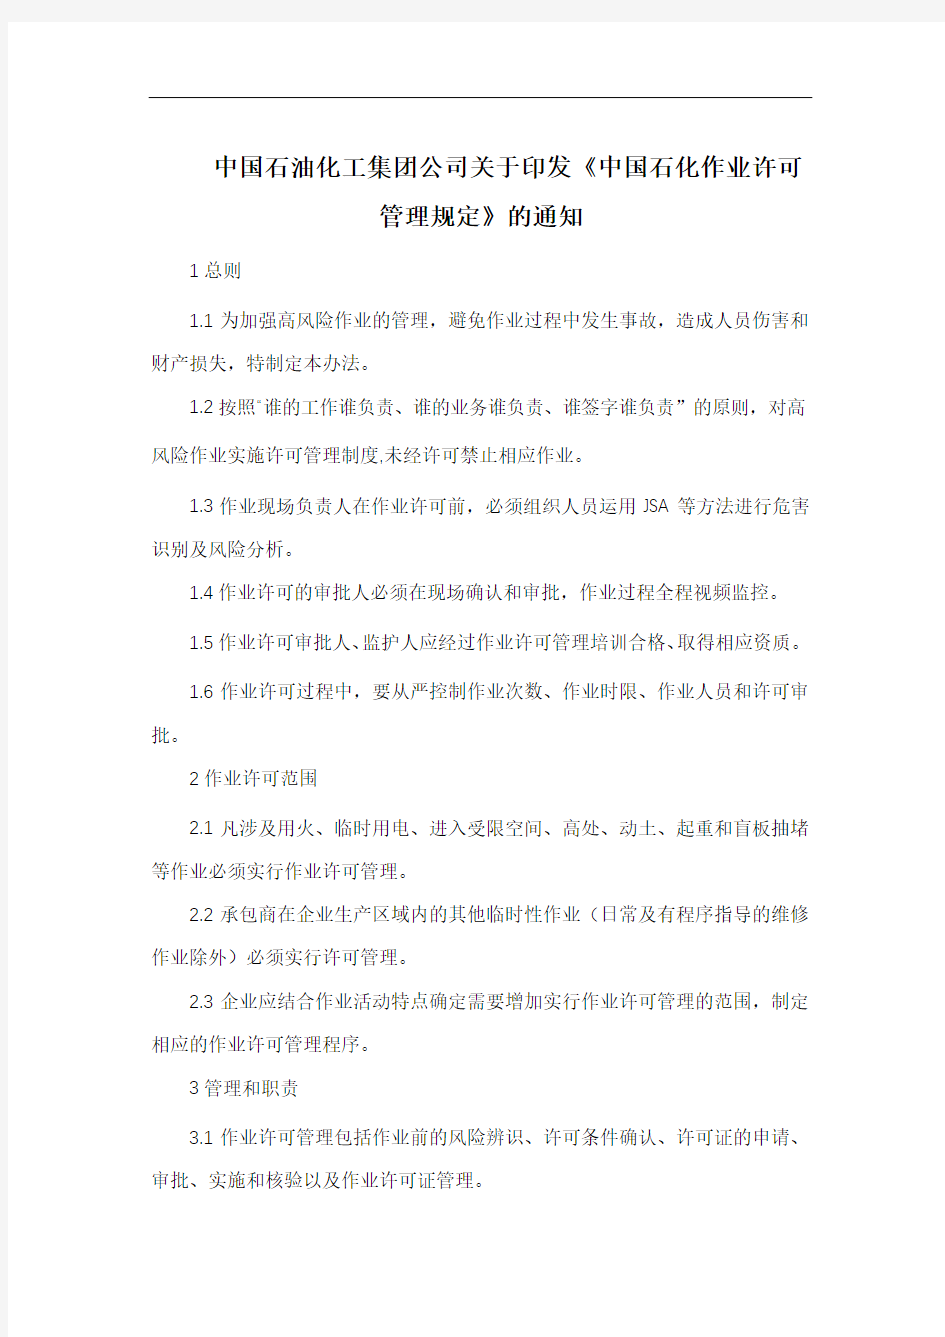 中国石化作业许可管理规定(含七项作业规定)